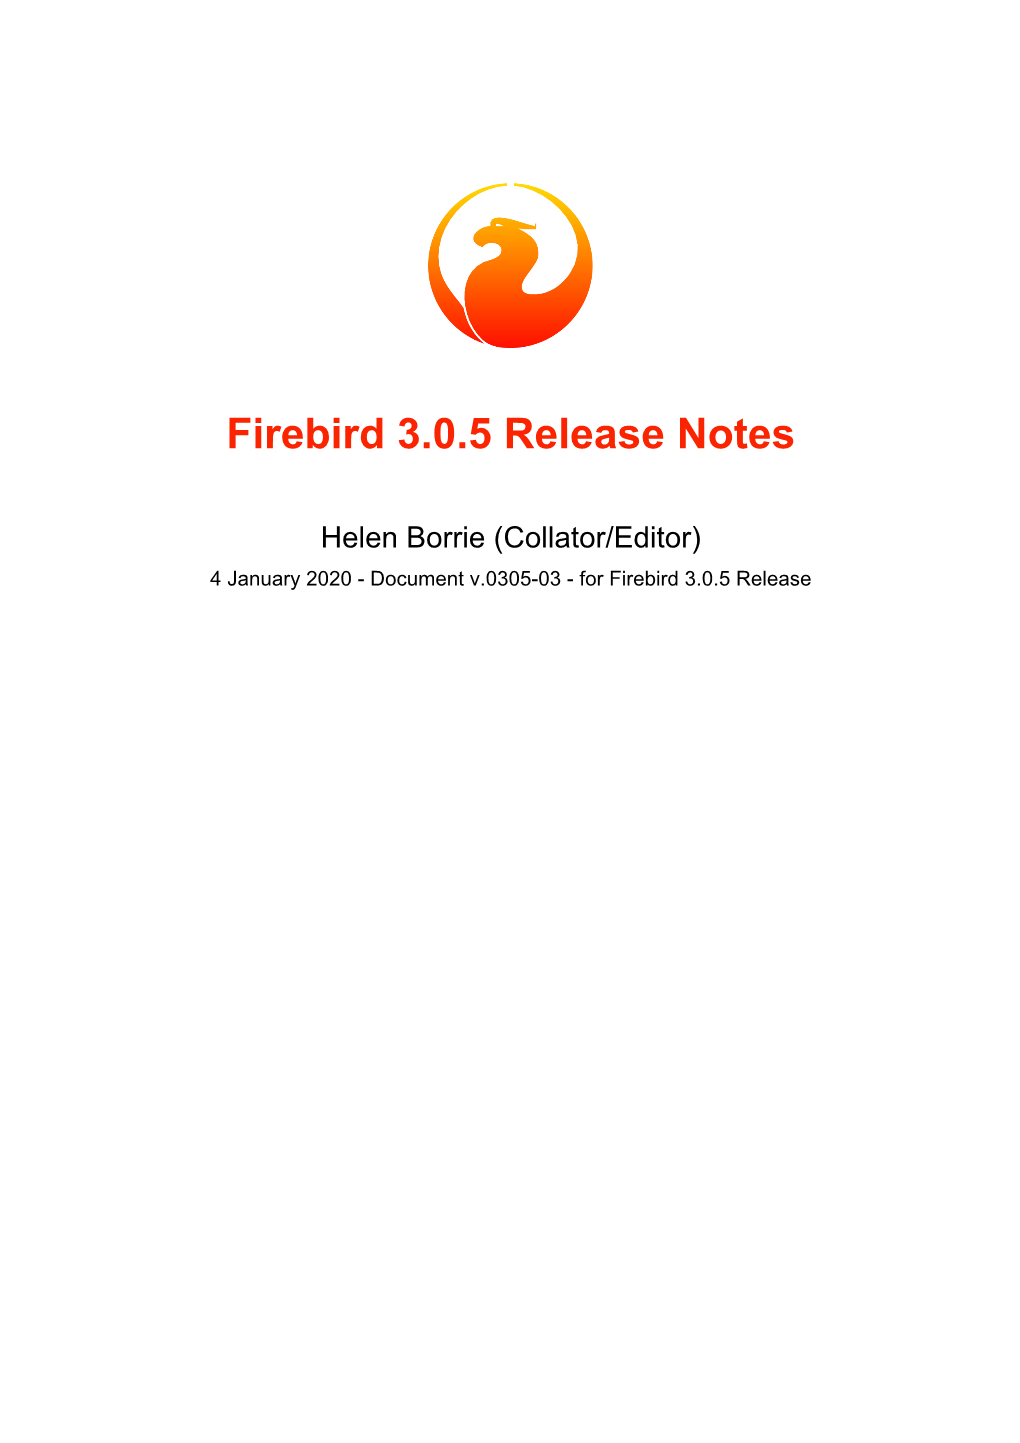 Firebird 3.0.5 Release Notes